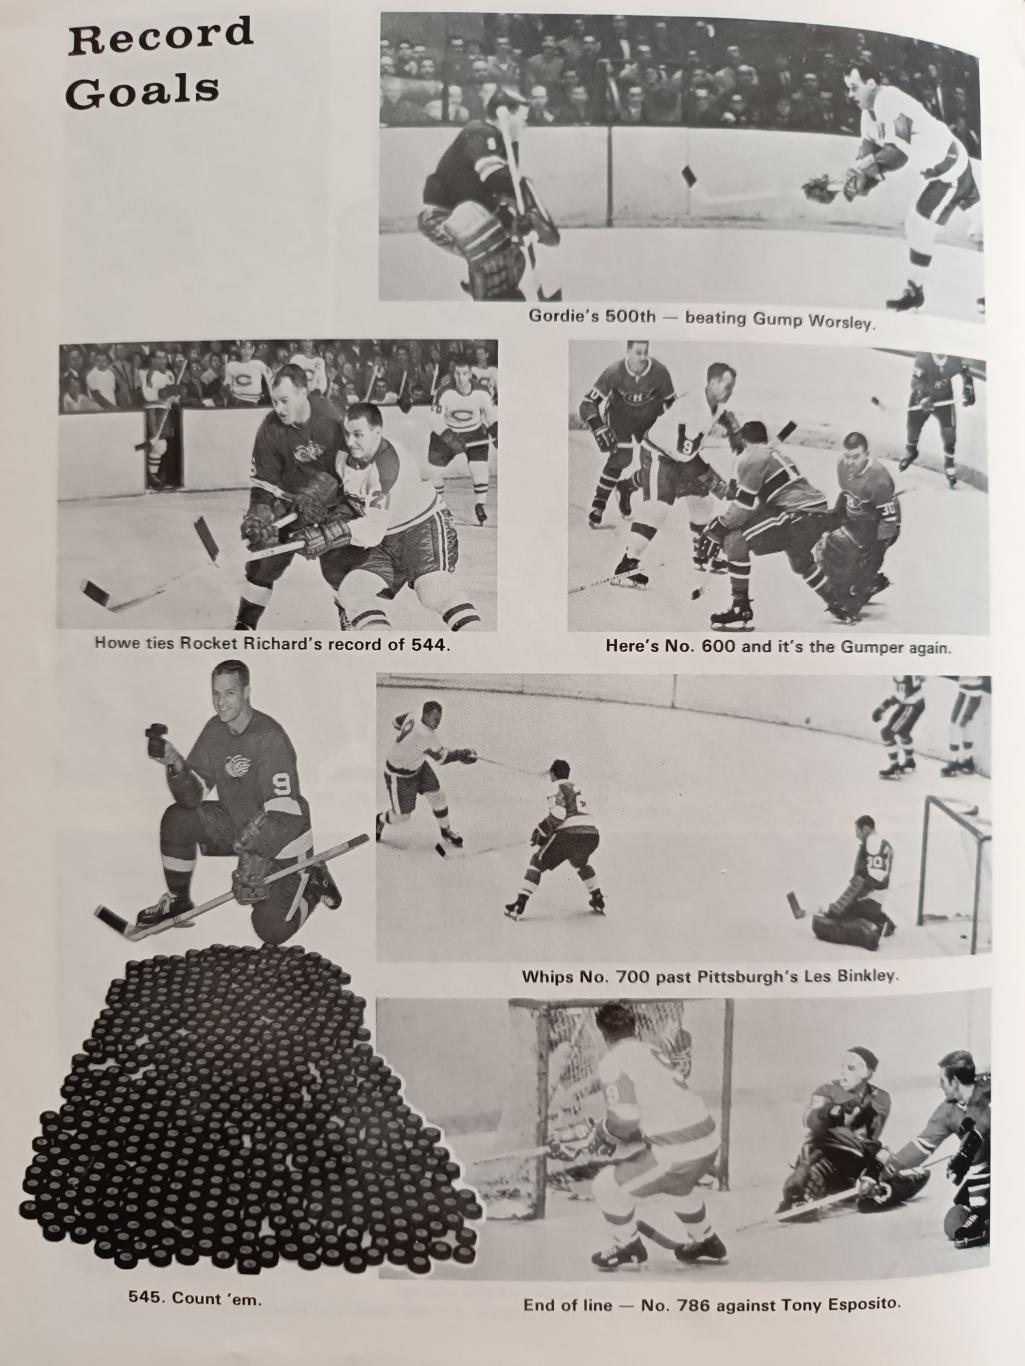 ХОККЕЙ КНИГА АЛЬБОМ НХЛ ГОРДИ ХОУ 786 ГОЛ NHL 1972 GORDIE HOWE 786 CAREER GOALS 2